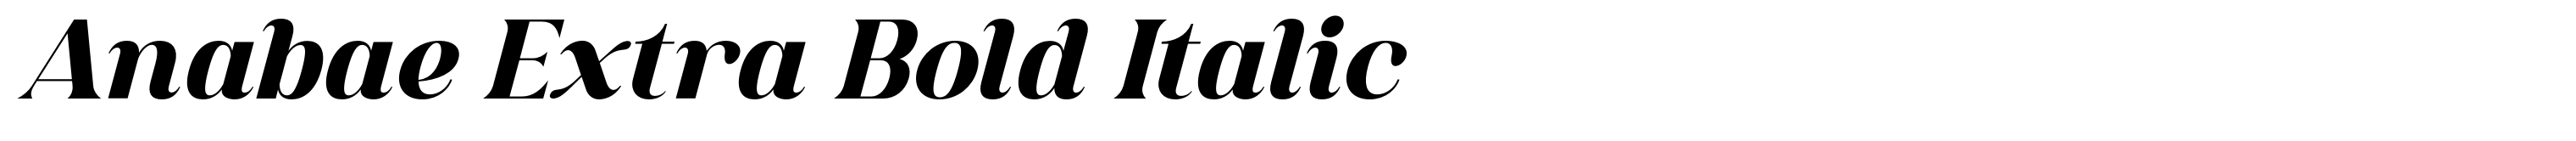 Anabae Extra Bold Italic